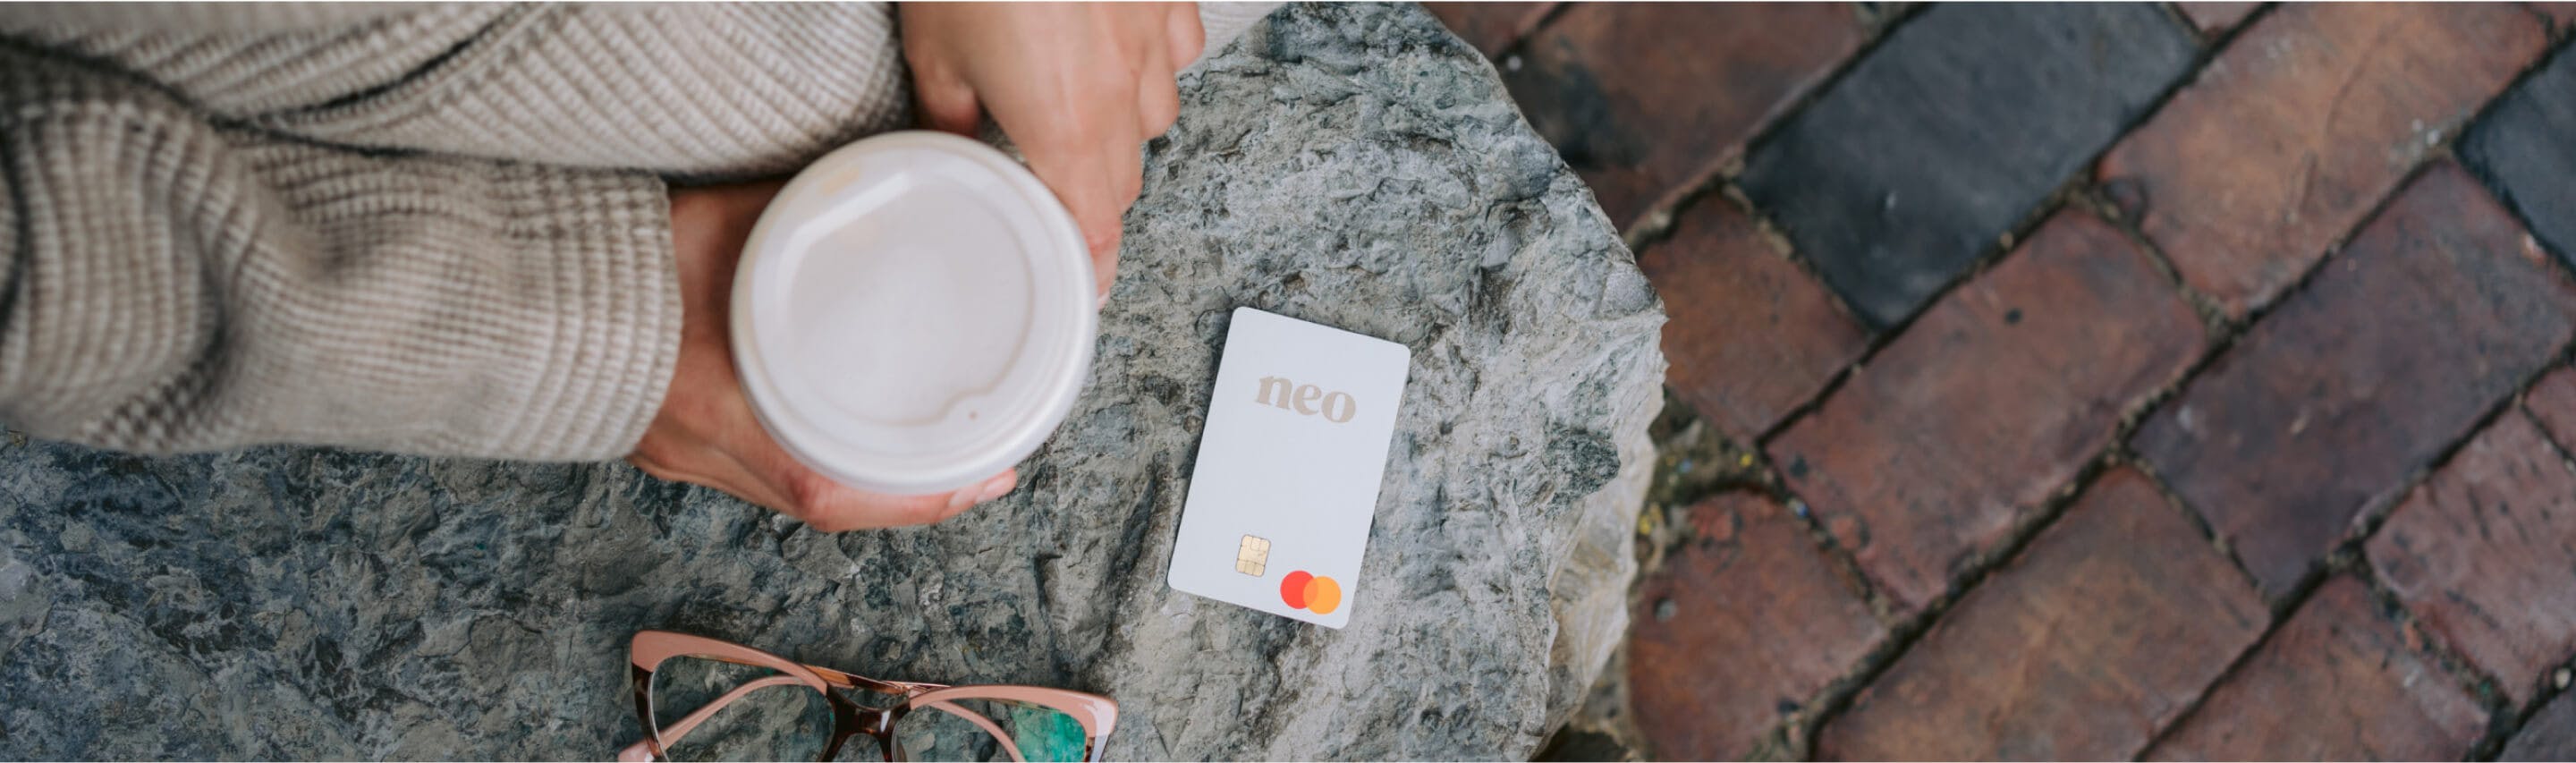 Faites une demande de carte Neo Crédit en ligne